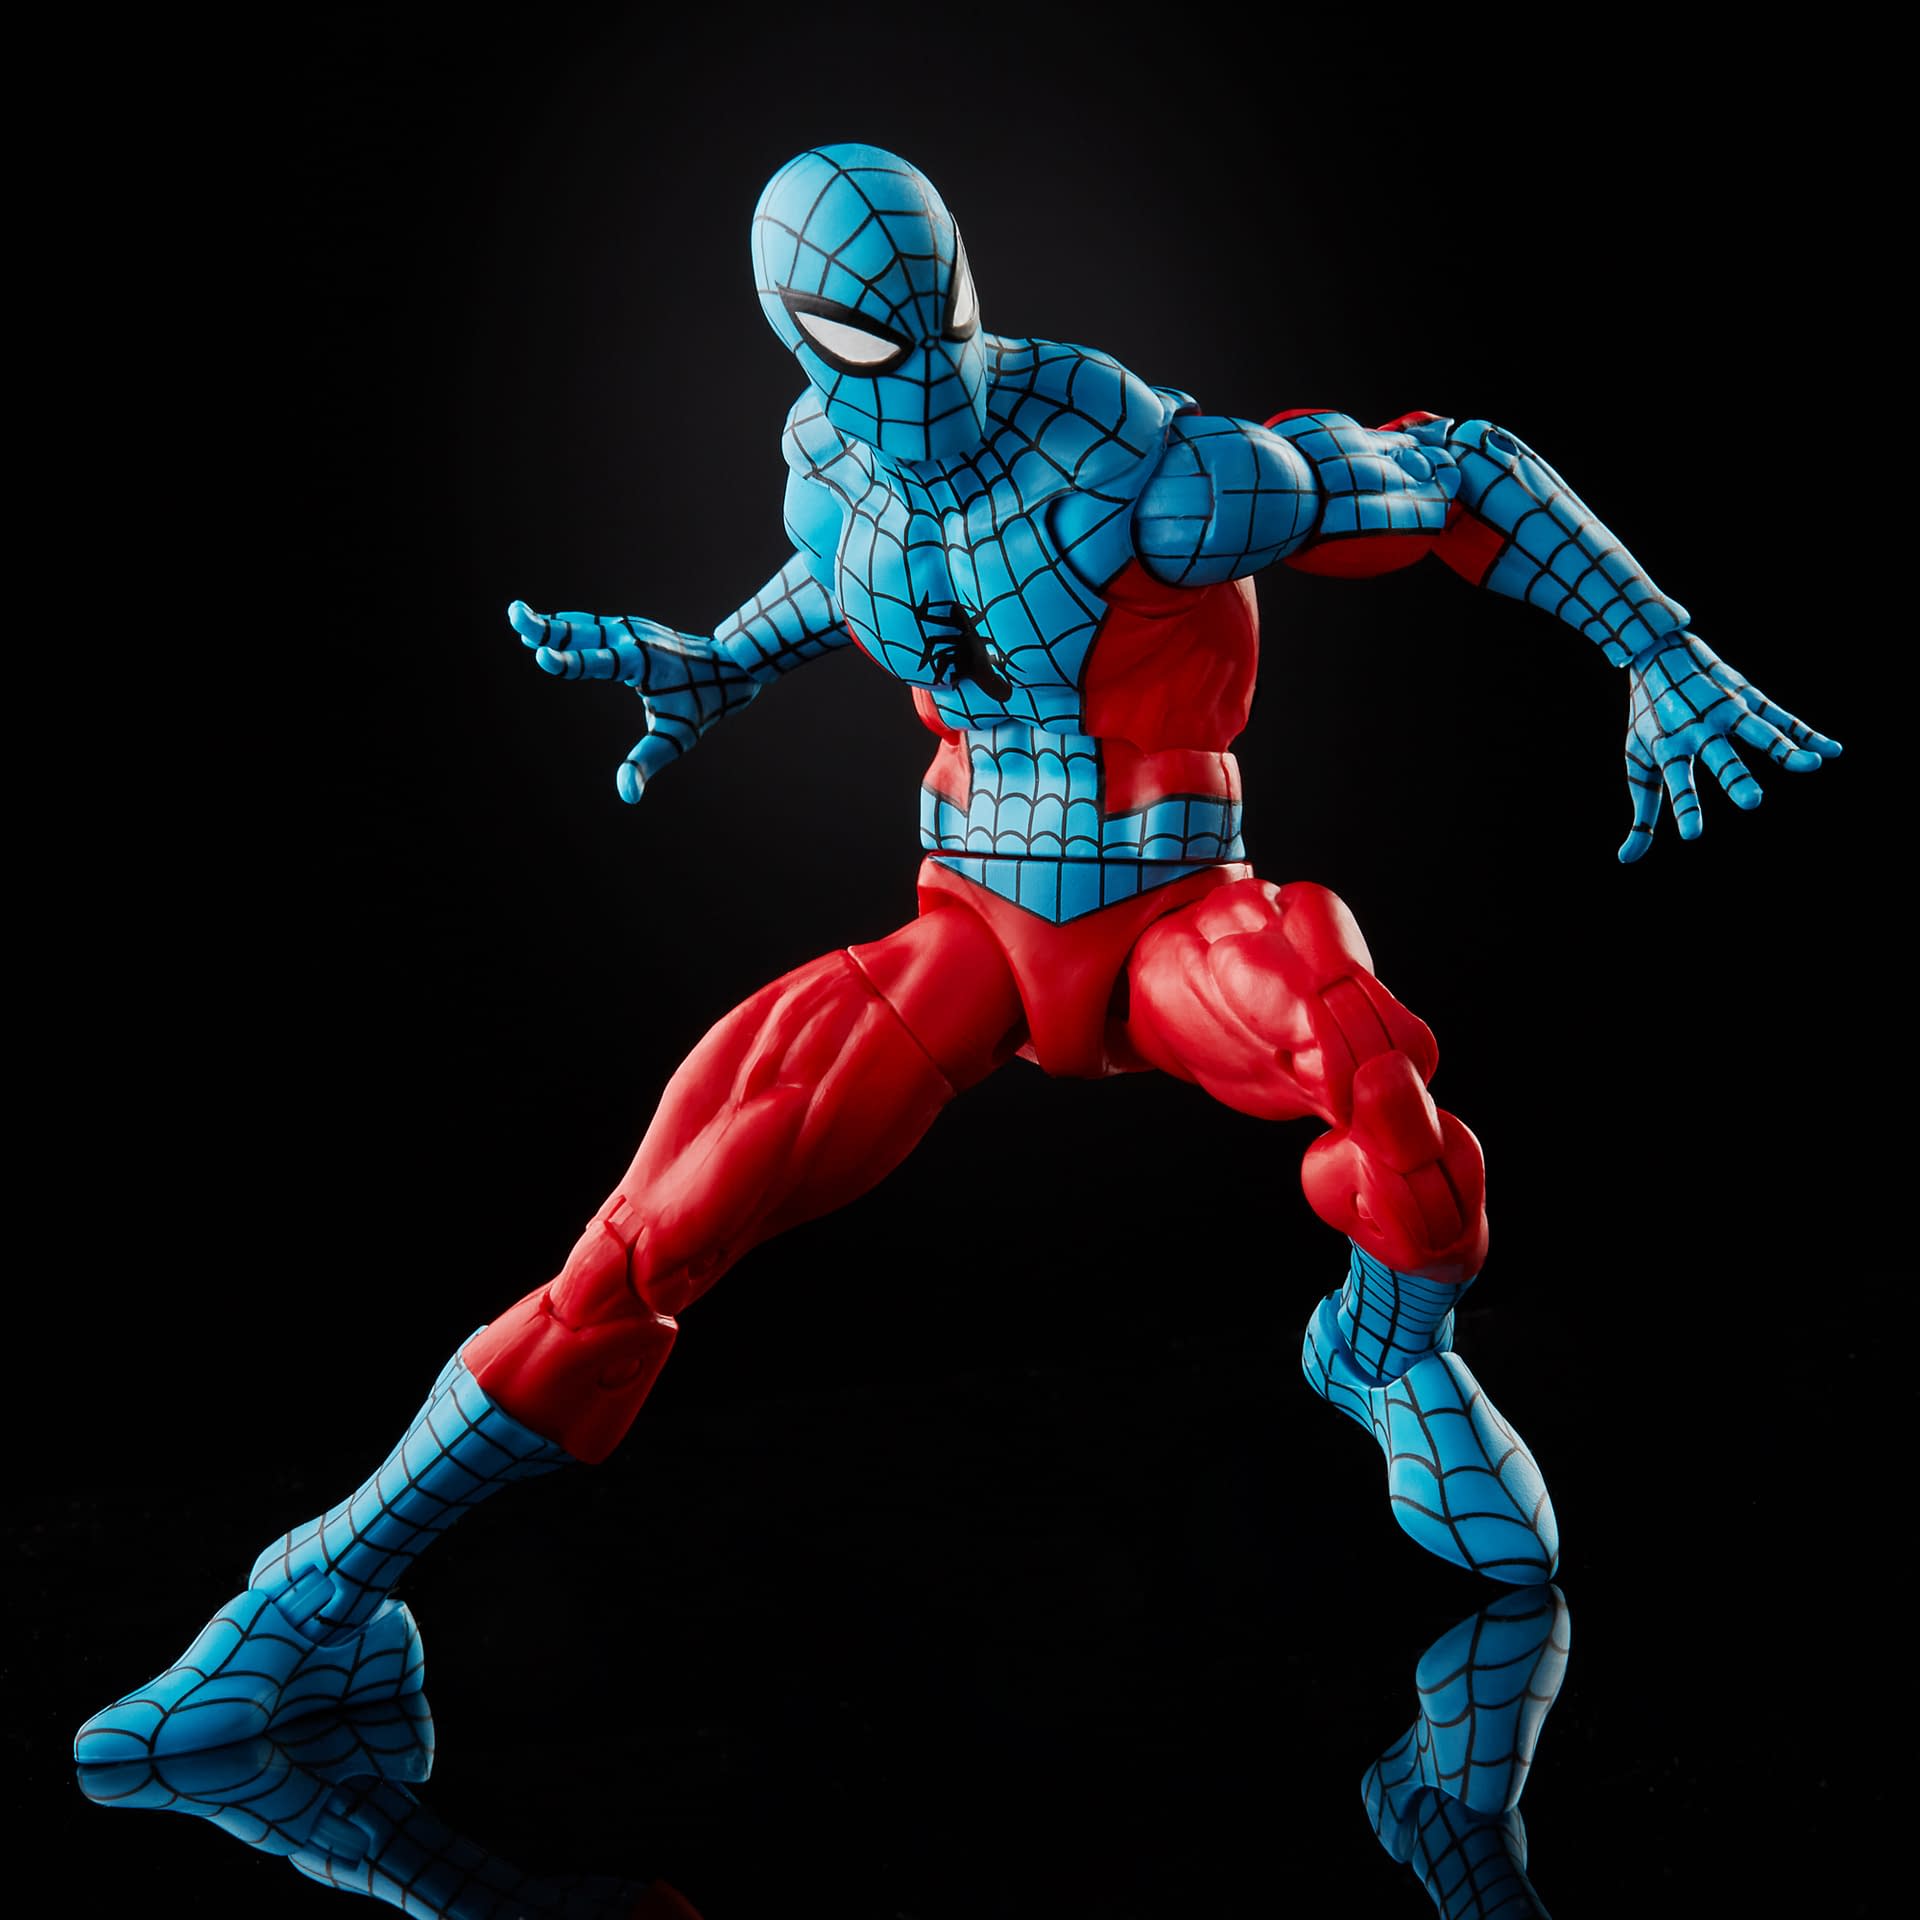 Marvel Legends Spider-Man Web-Man Figure Up For Order Now